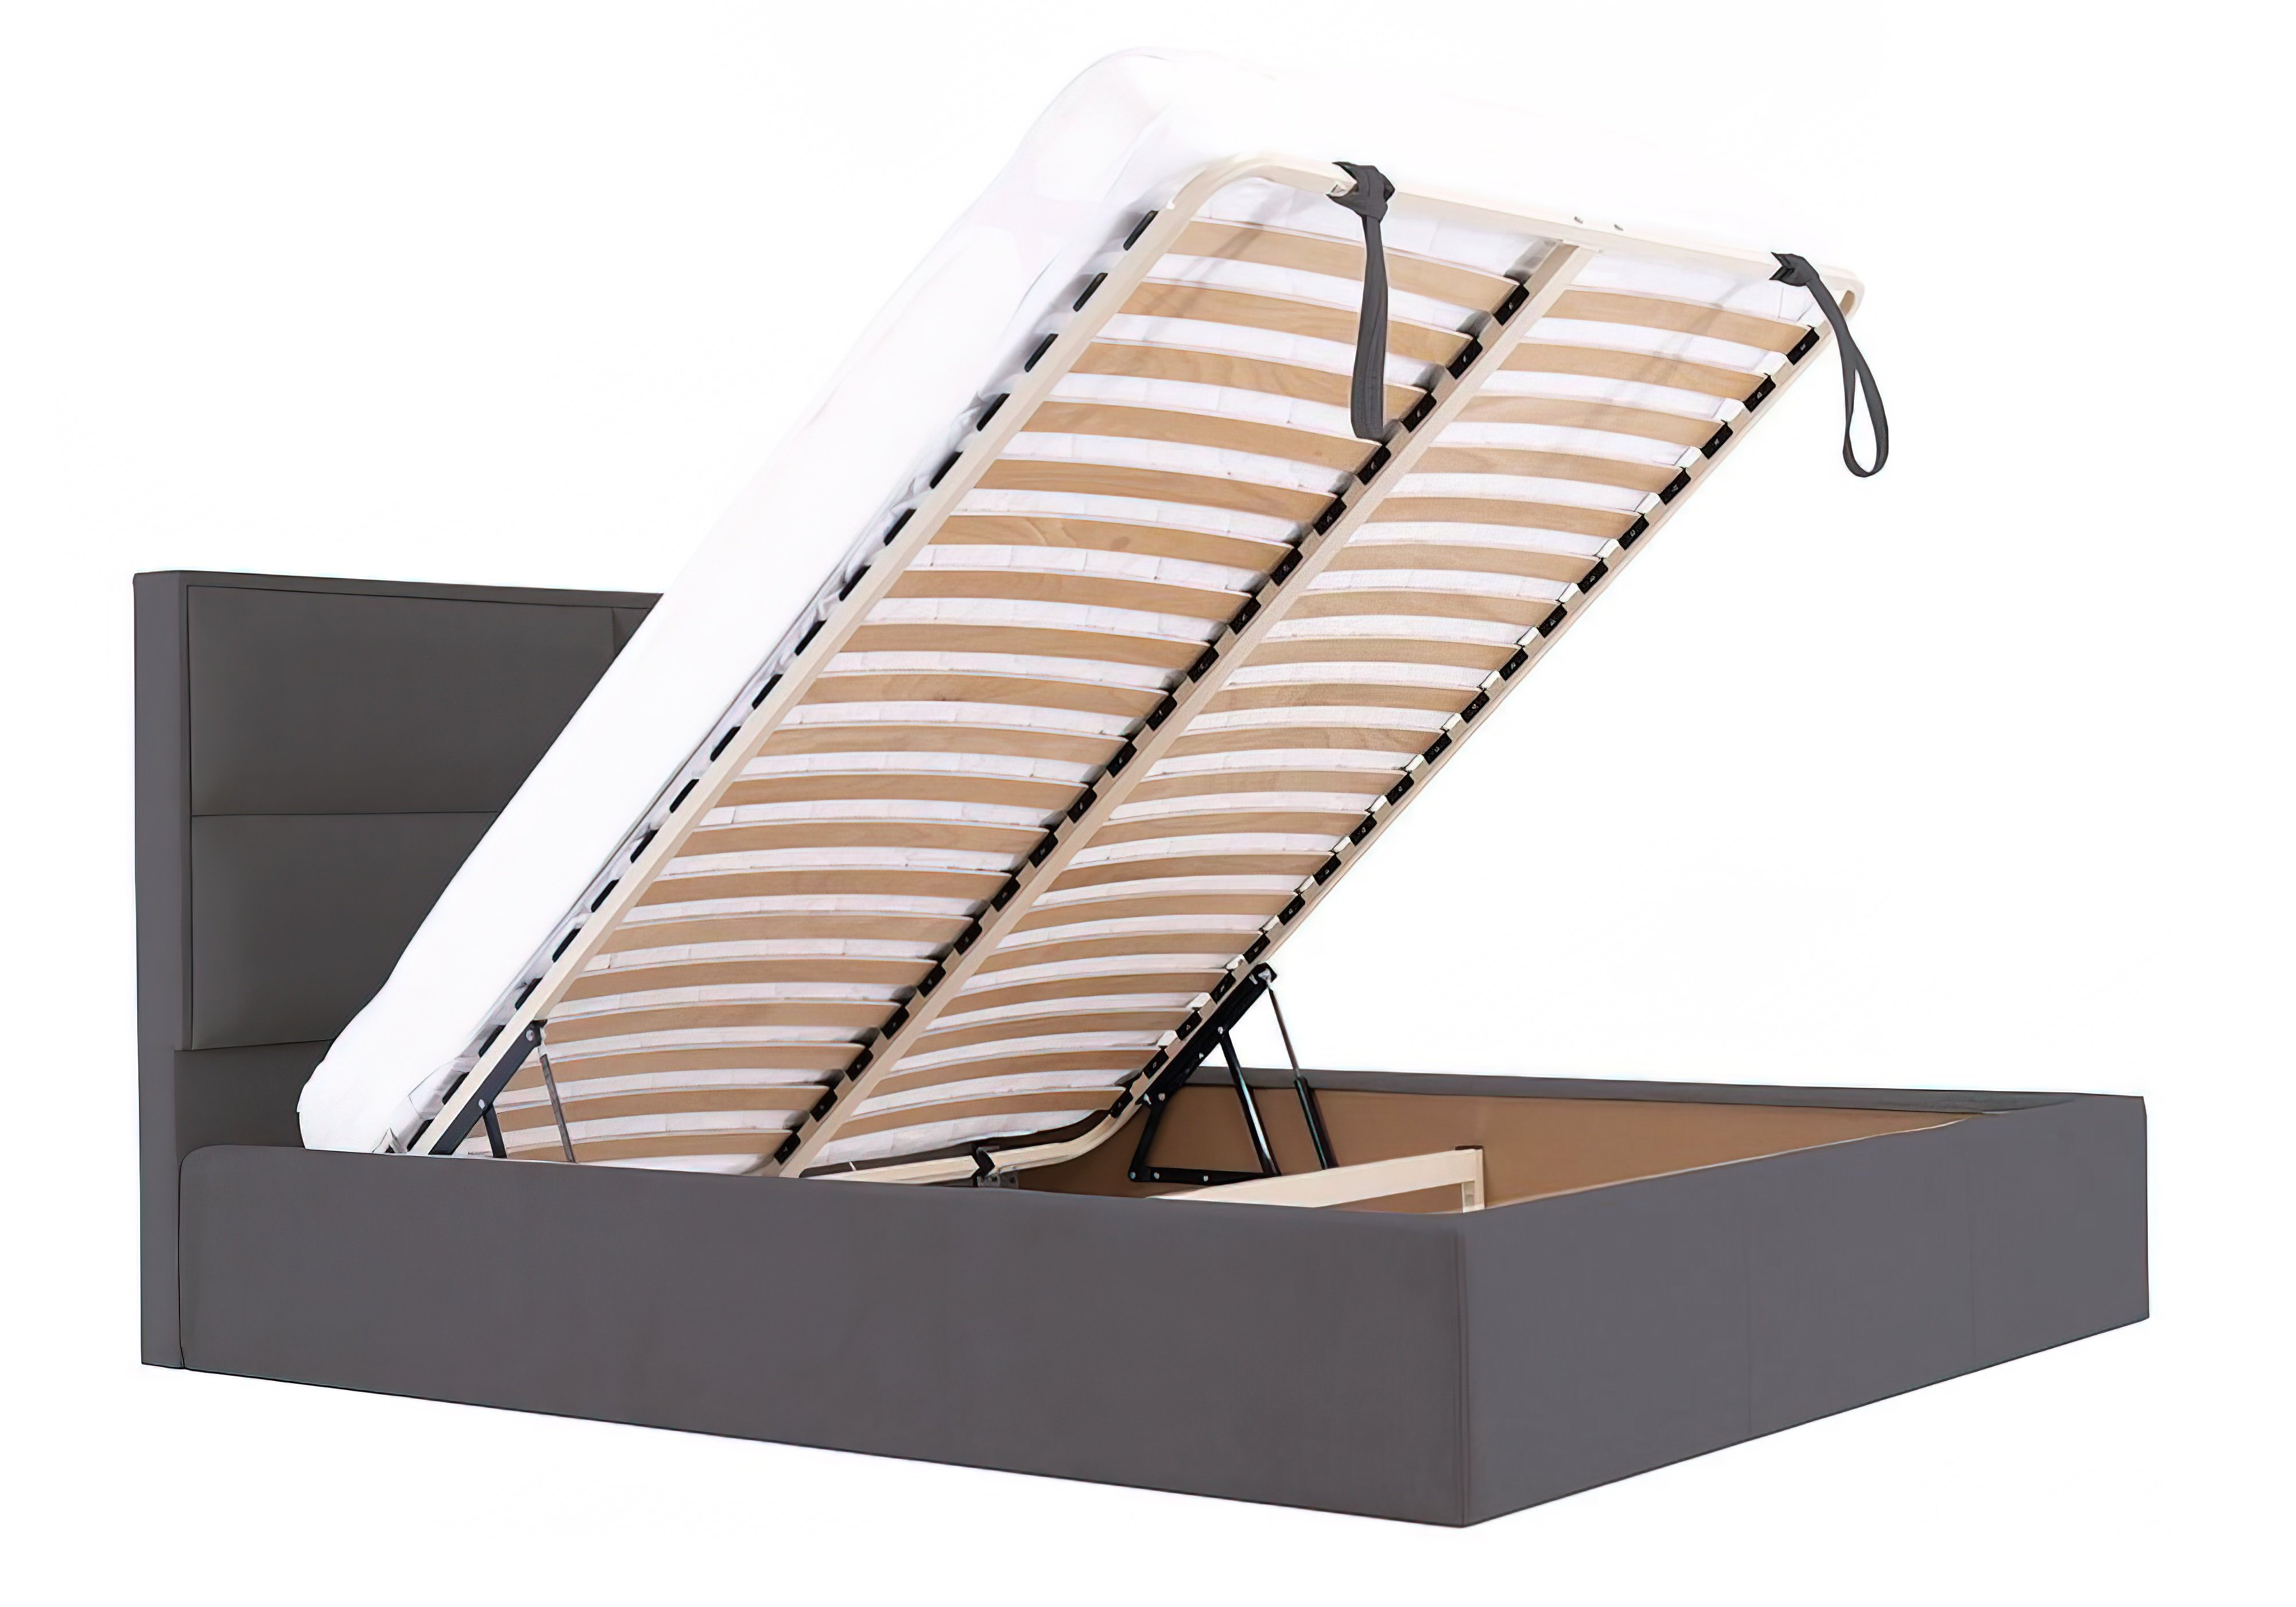  Купить Кровати с подъемным механизмом Кровать с подъемным механизмом "Шеффилд" Richman